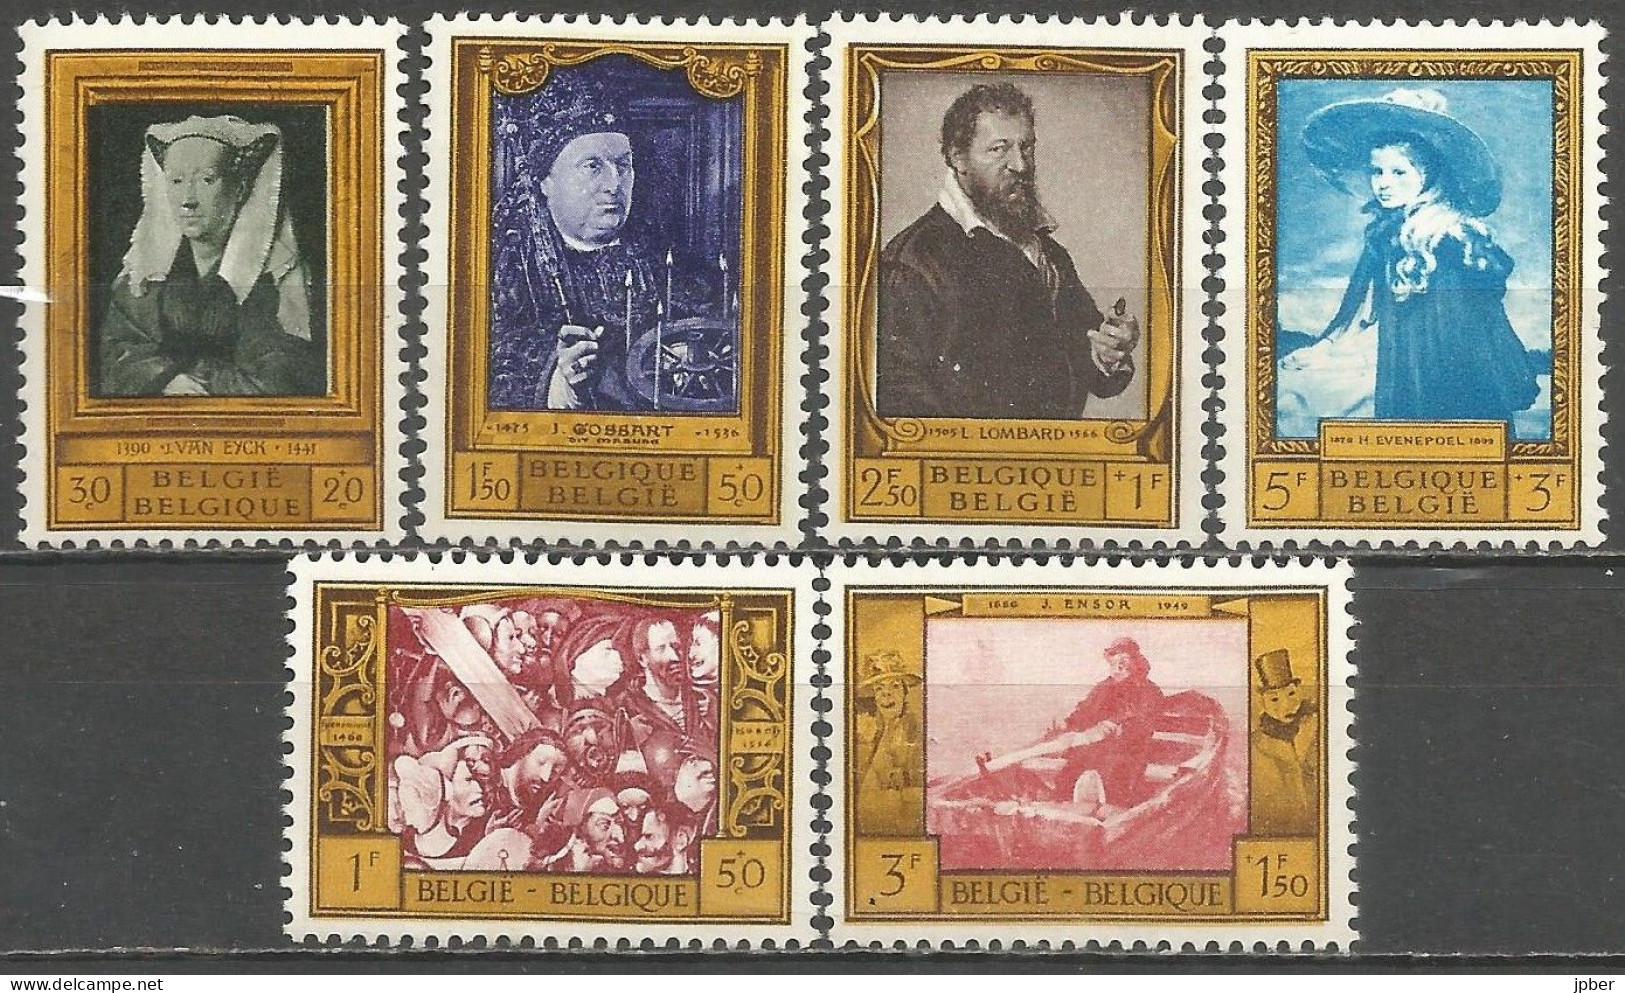 Belgique - Tableaux Peintres Belges - Van Eyck, Bosch, Gossart, Lombard, Ensor, Evenepoel - N°1076 à 1081 * - Unused Stamps